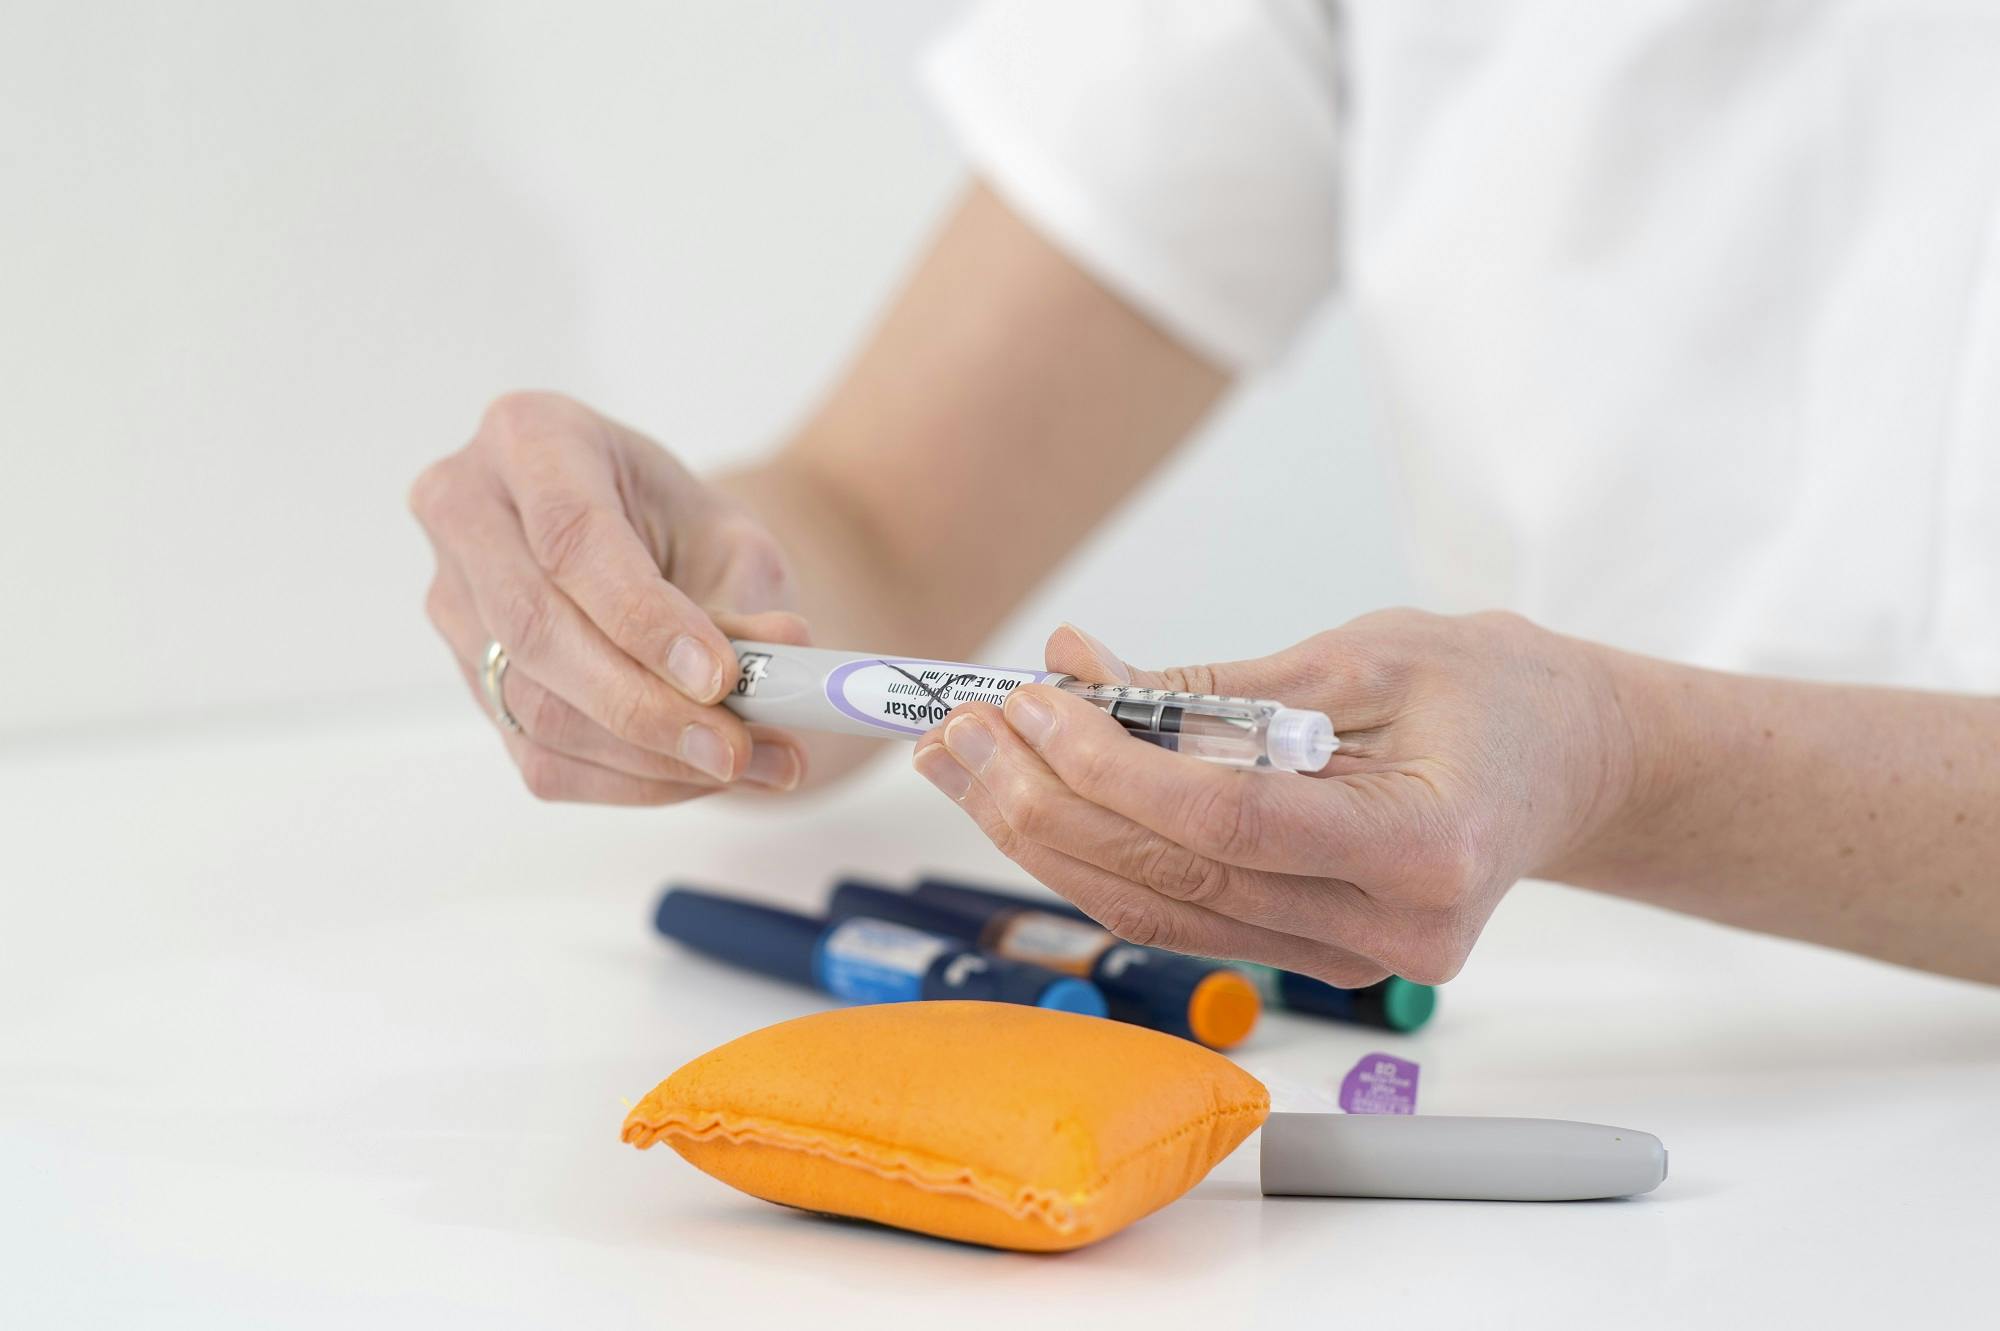 Ein Mediziner bereitet einen Insulinpen vor, mit weiteren Diabetes-Utensilien im Vordergrund.